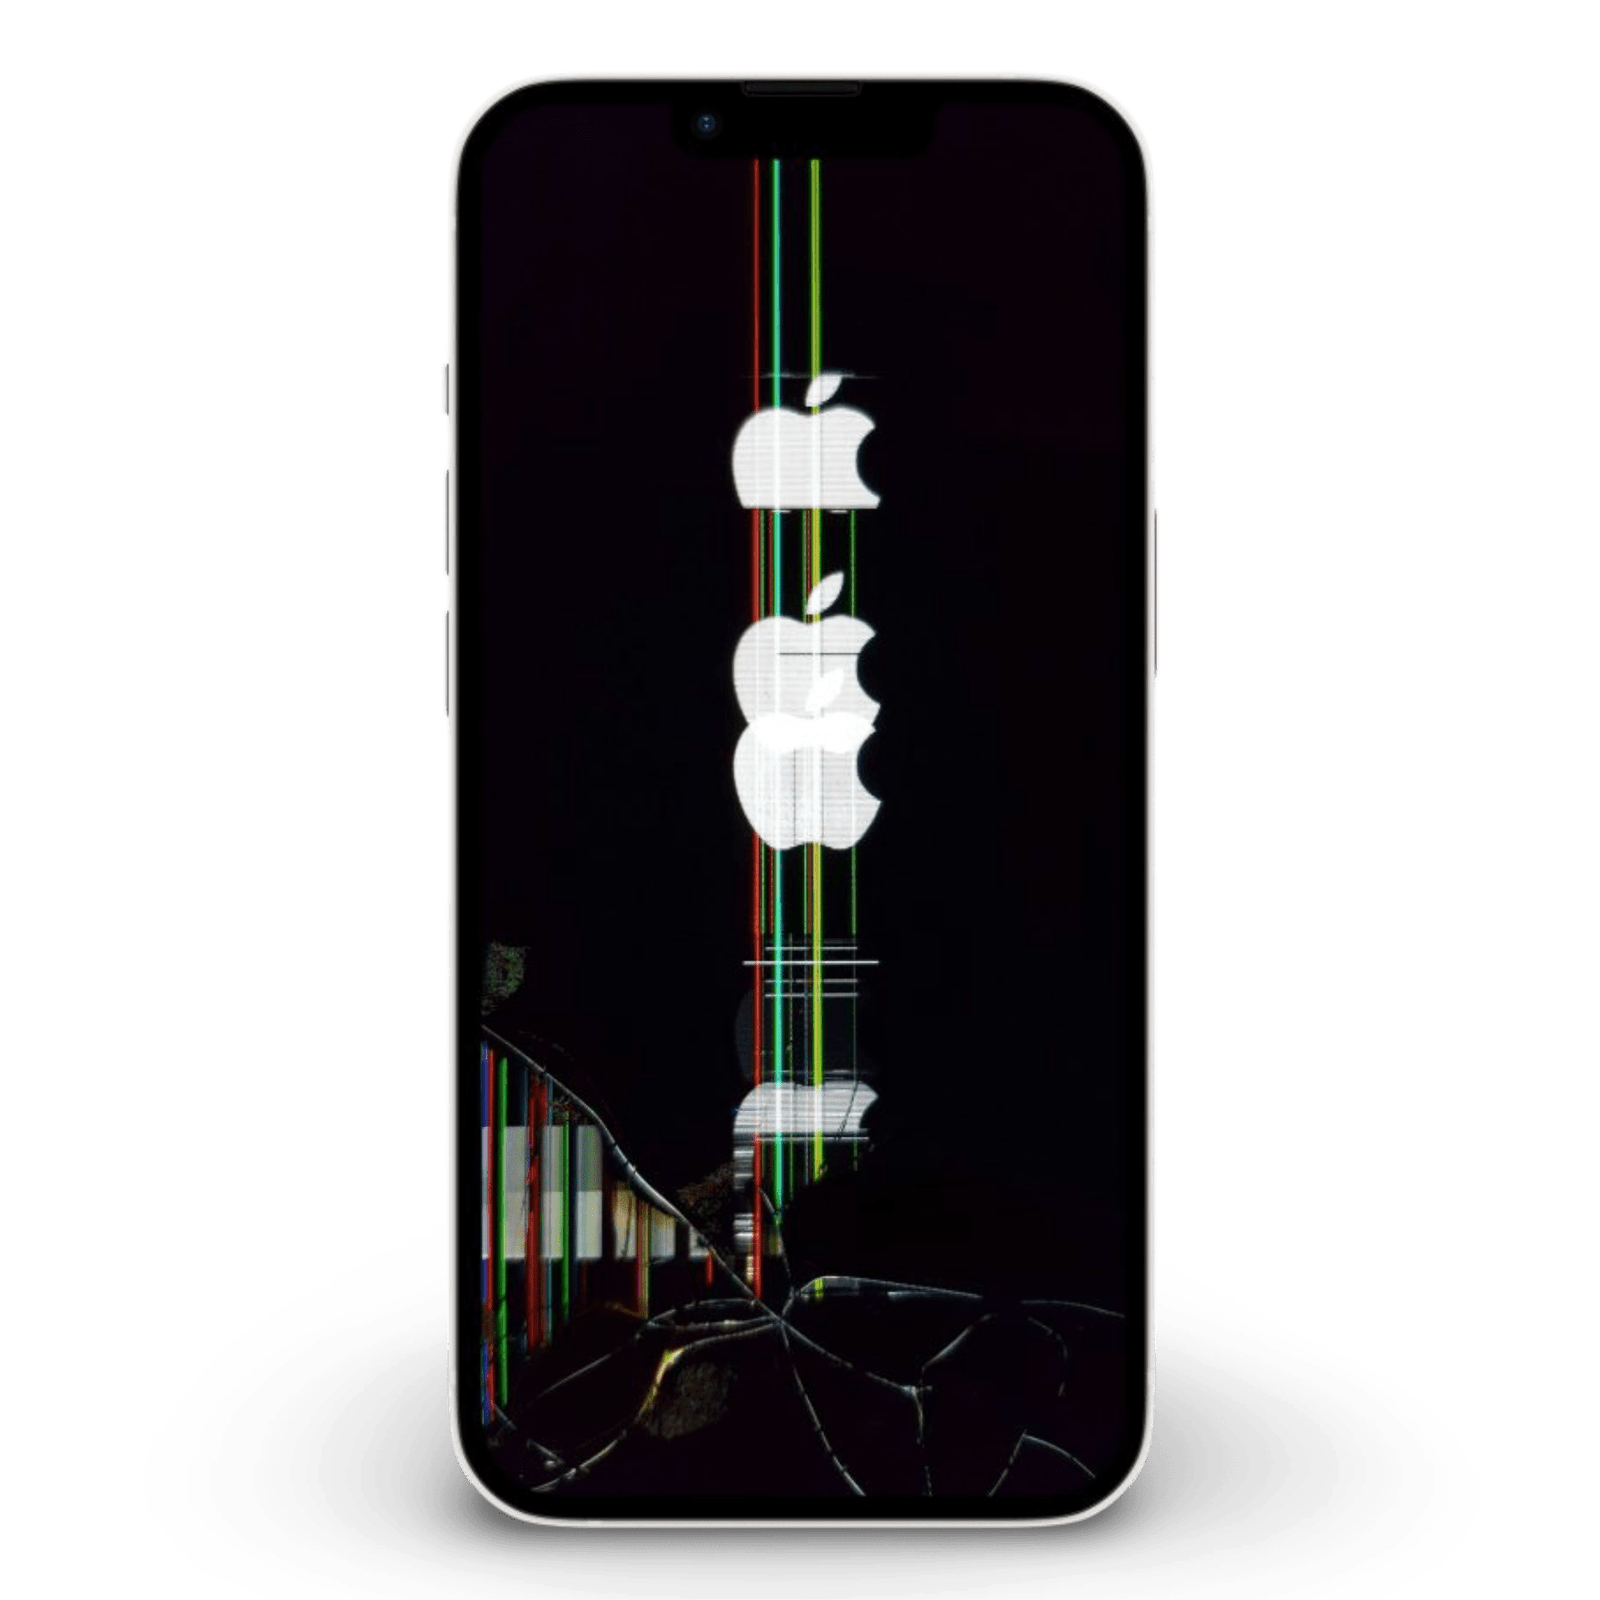 iPhone screen broken flickering apple logo with line on display 1